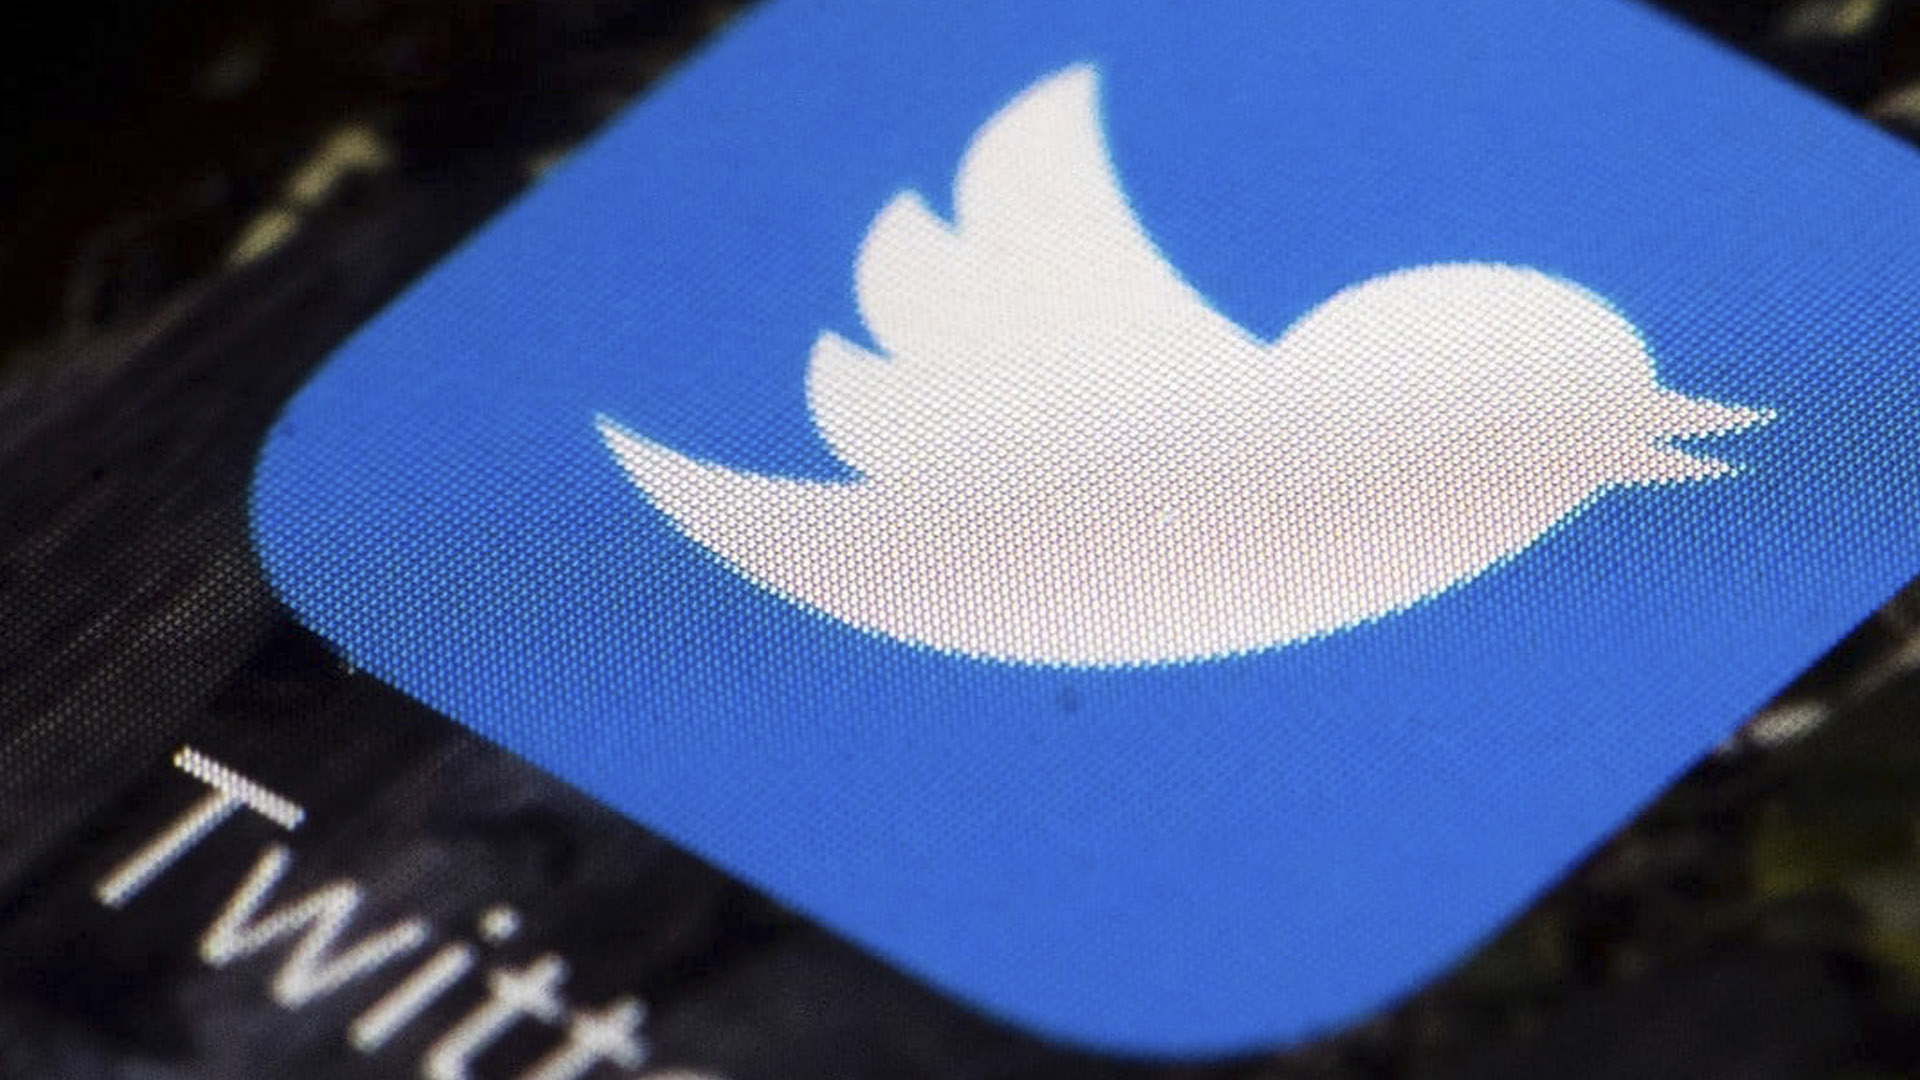 Probox: Gobierno promueve la idea en Twitter de que no tiene responsabilidad en desfalco a Pdvsa